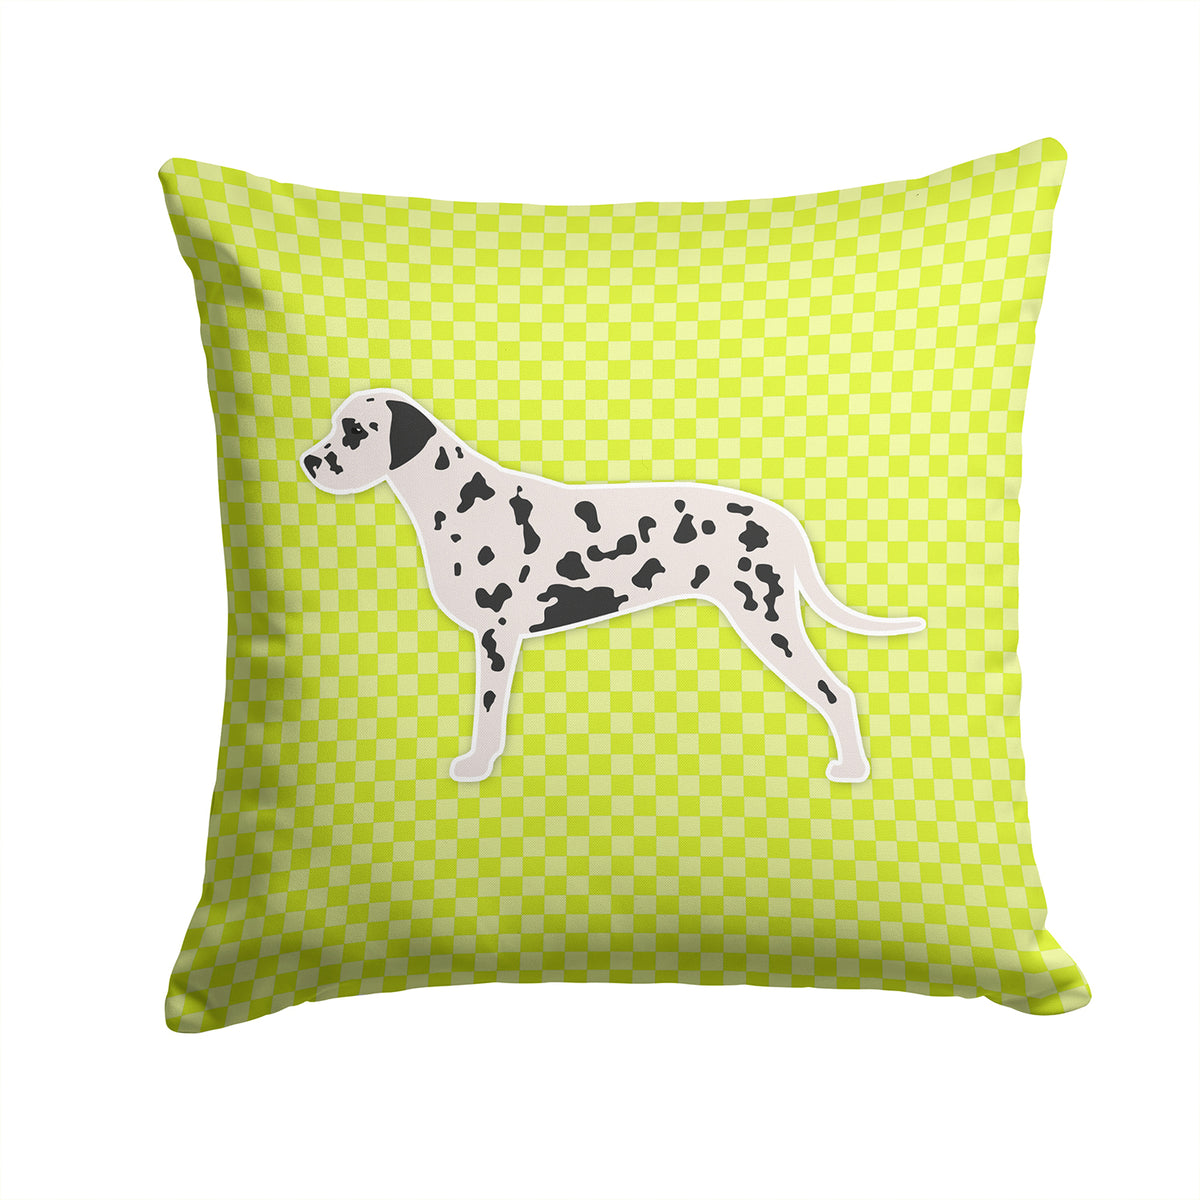 Dalmatian Checkerboard Green Fabric Decorative Pillow BB3783PW1414 - the-store.com